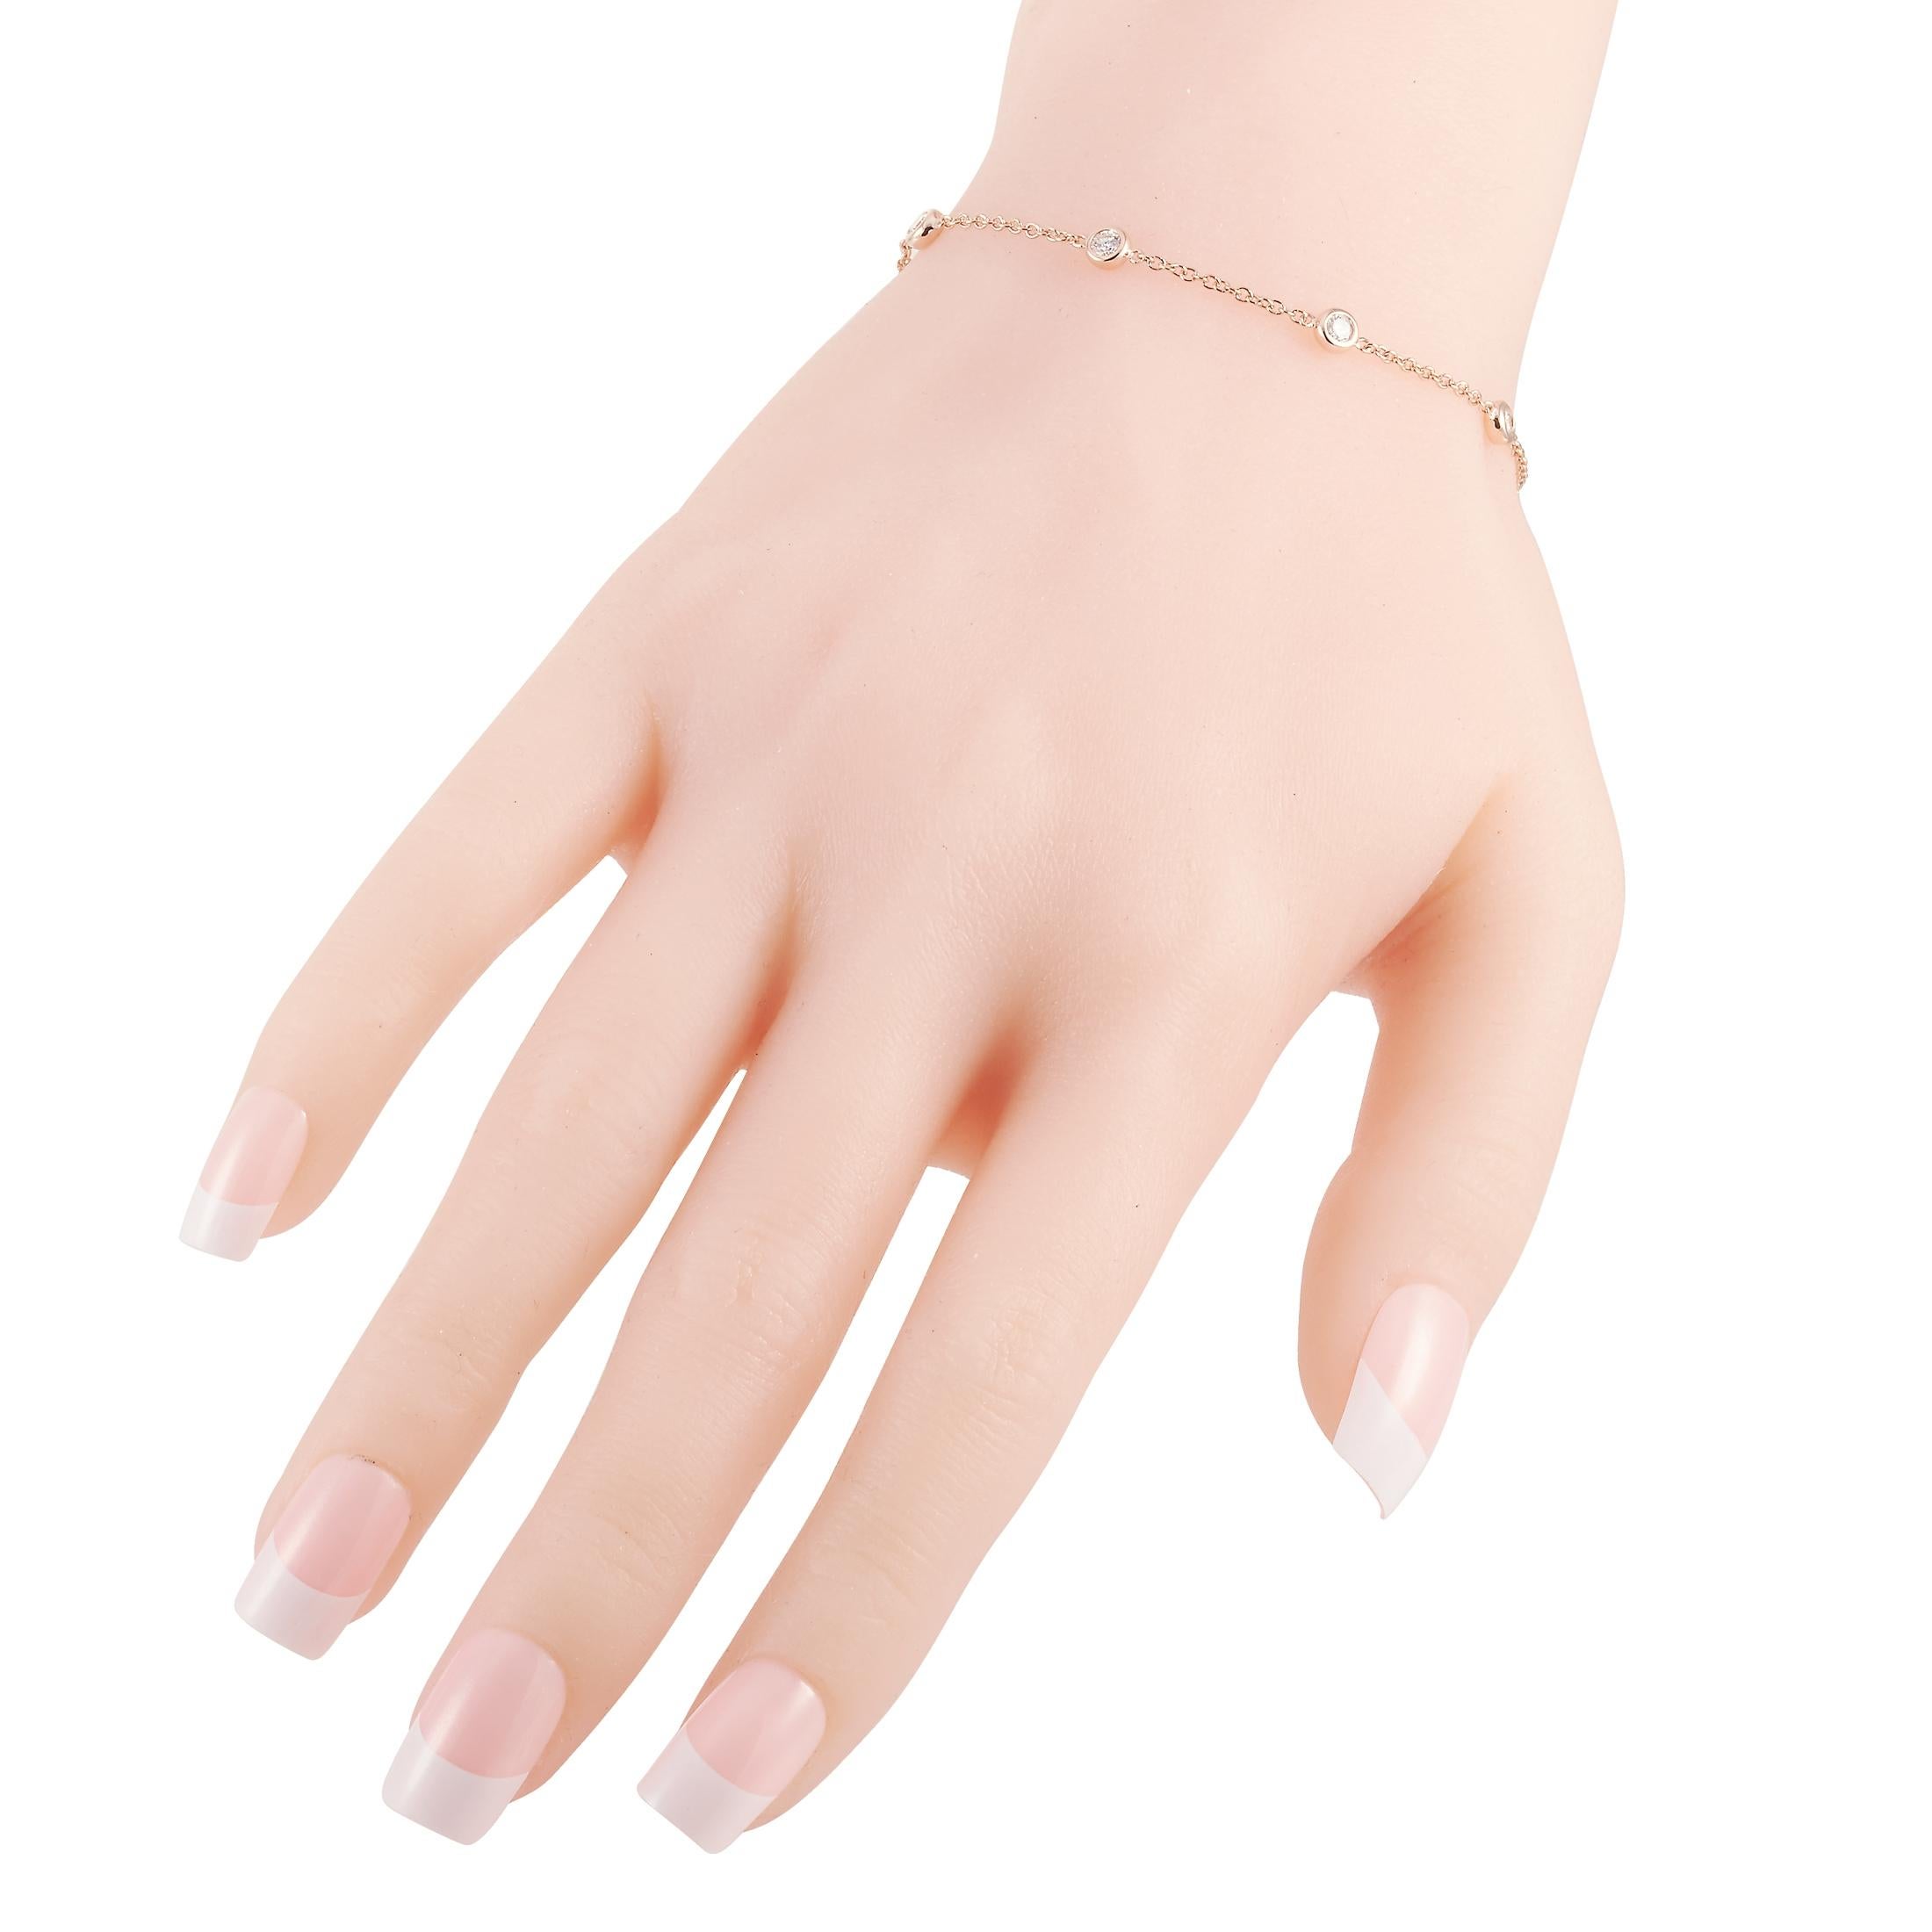 Ce bracelet LB Exclusive est fabriqué en or rose 14 carats et agrémenté de diamants de 0,50 carat. Le bracelet pèse 2,5 grammes et mesure 6,50 cm de long.
 
 Proposé dans un état neuf, cette pièce de joaillerie comprend une boîte cadeau.